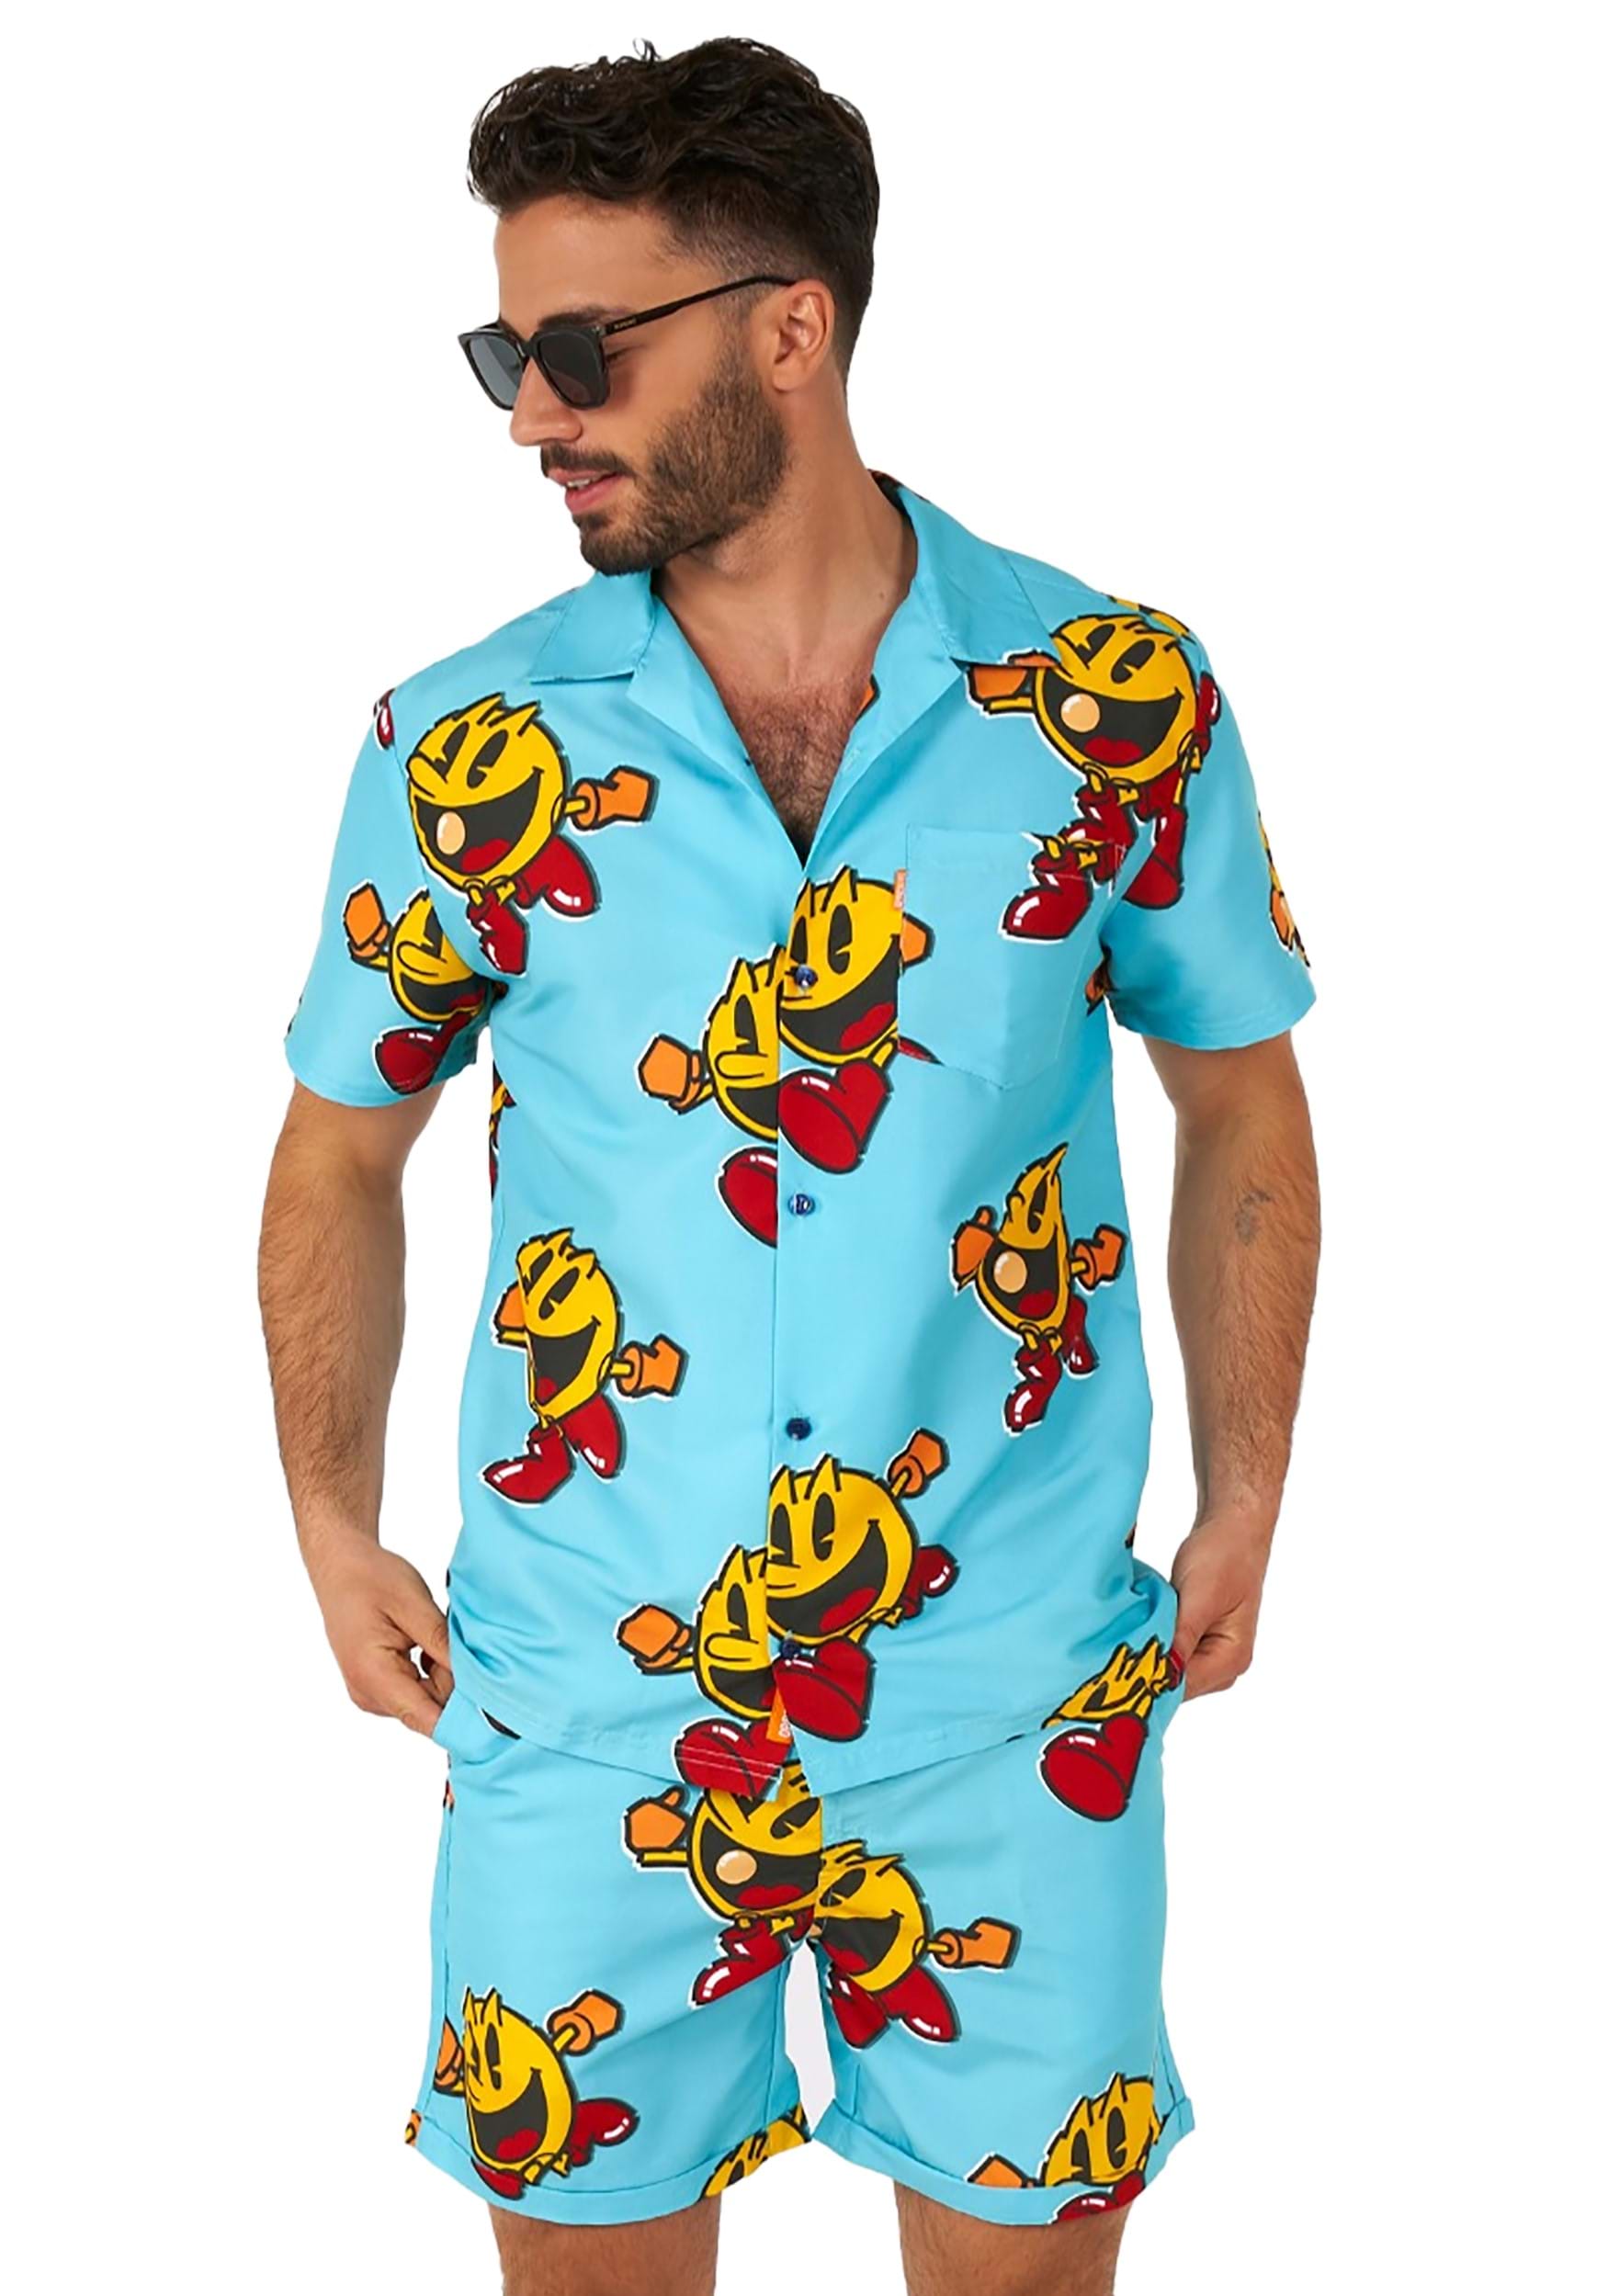 Pac-man Waka Waka traje de baño y camisa para hombres Multicolor